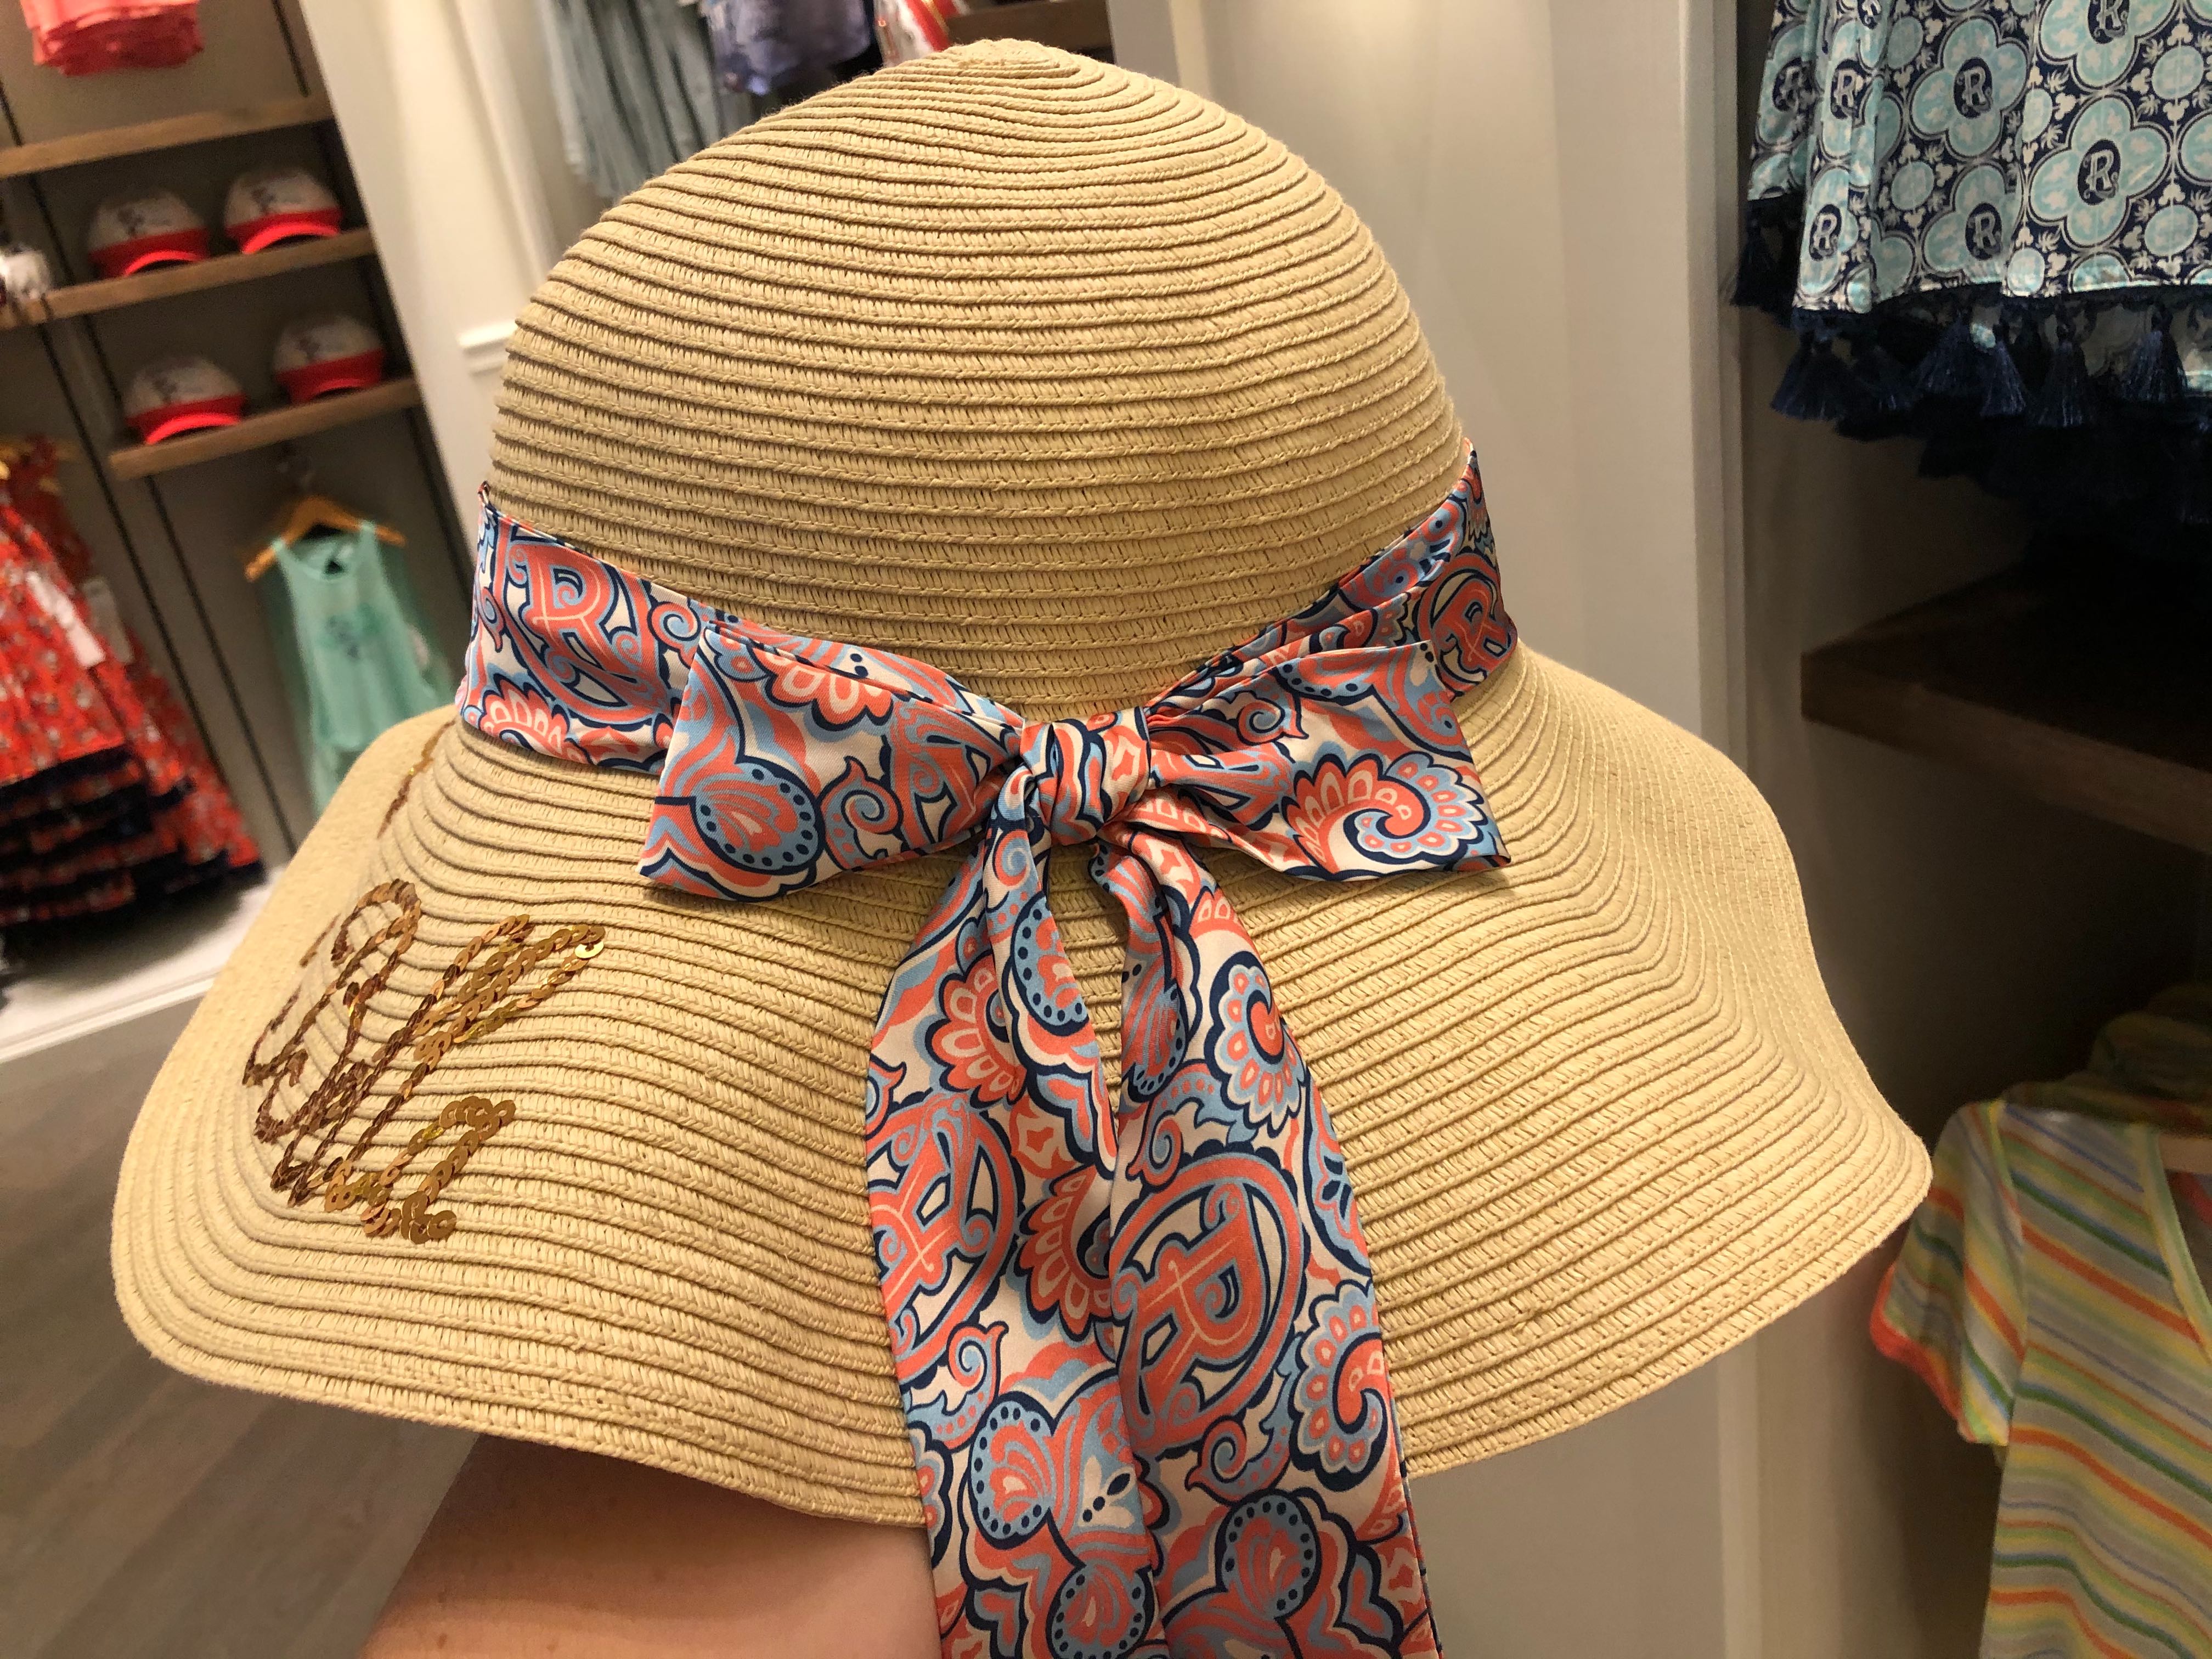 Straw Riviera Resort Sequined Sun Hat - $34.99